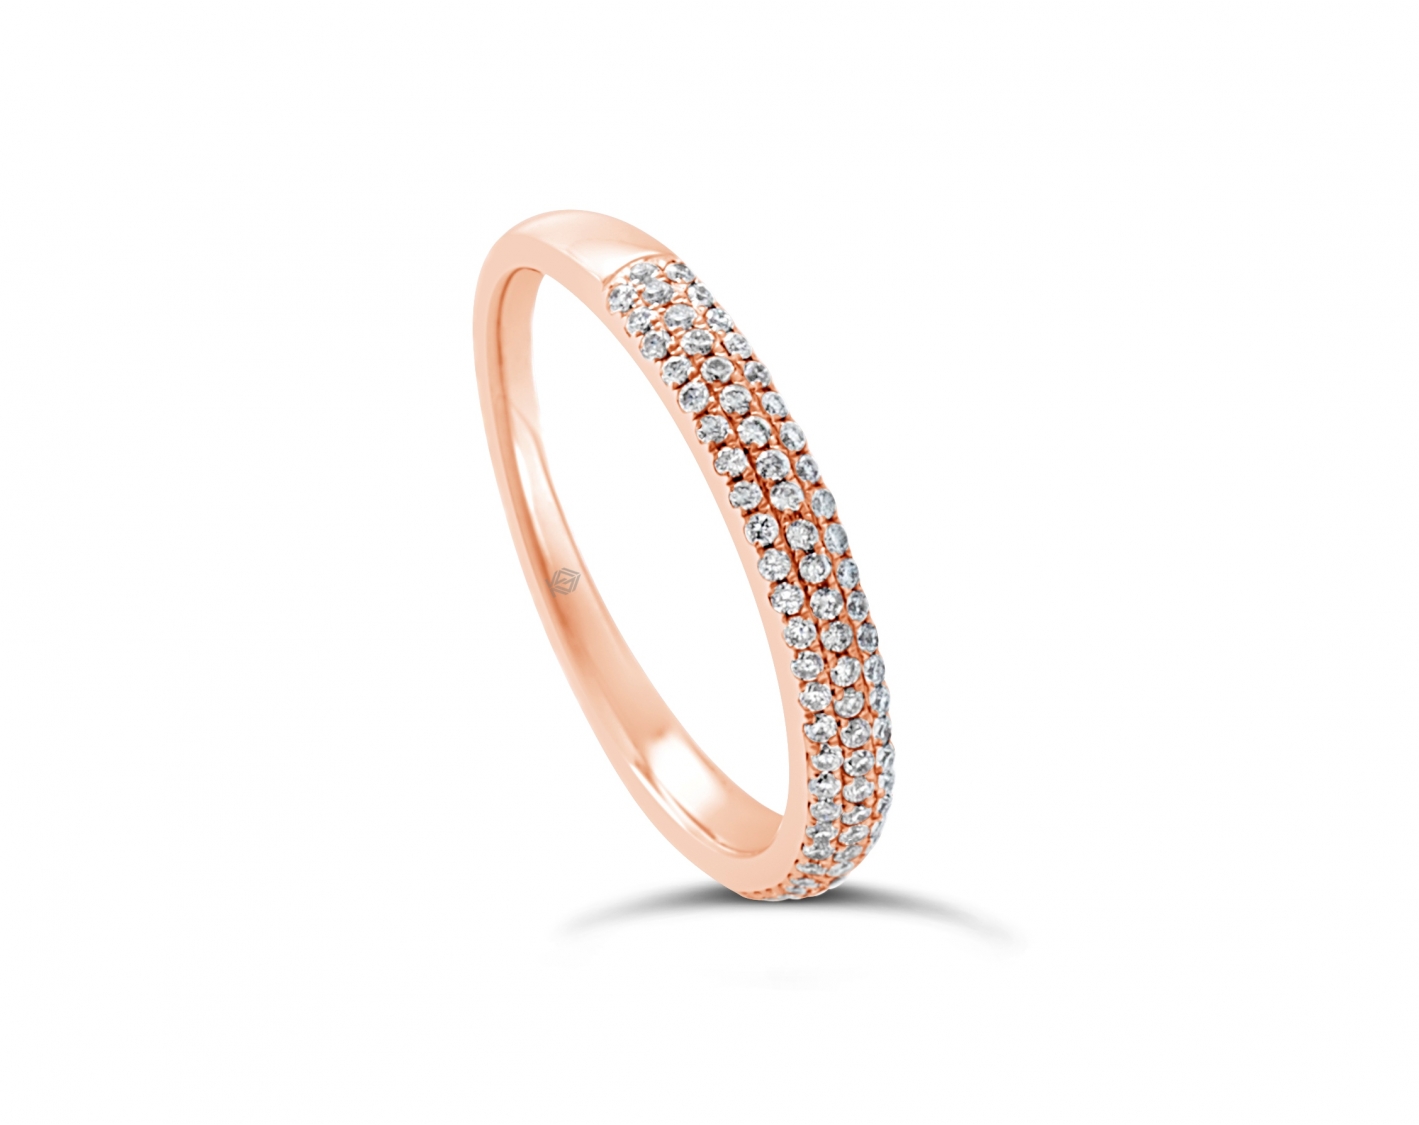 18k rose gold 3-row bombay half eternity round shaped diamond wedding ring Photos & images